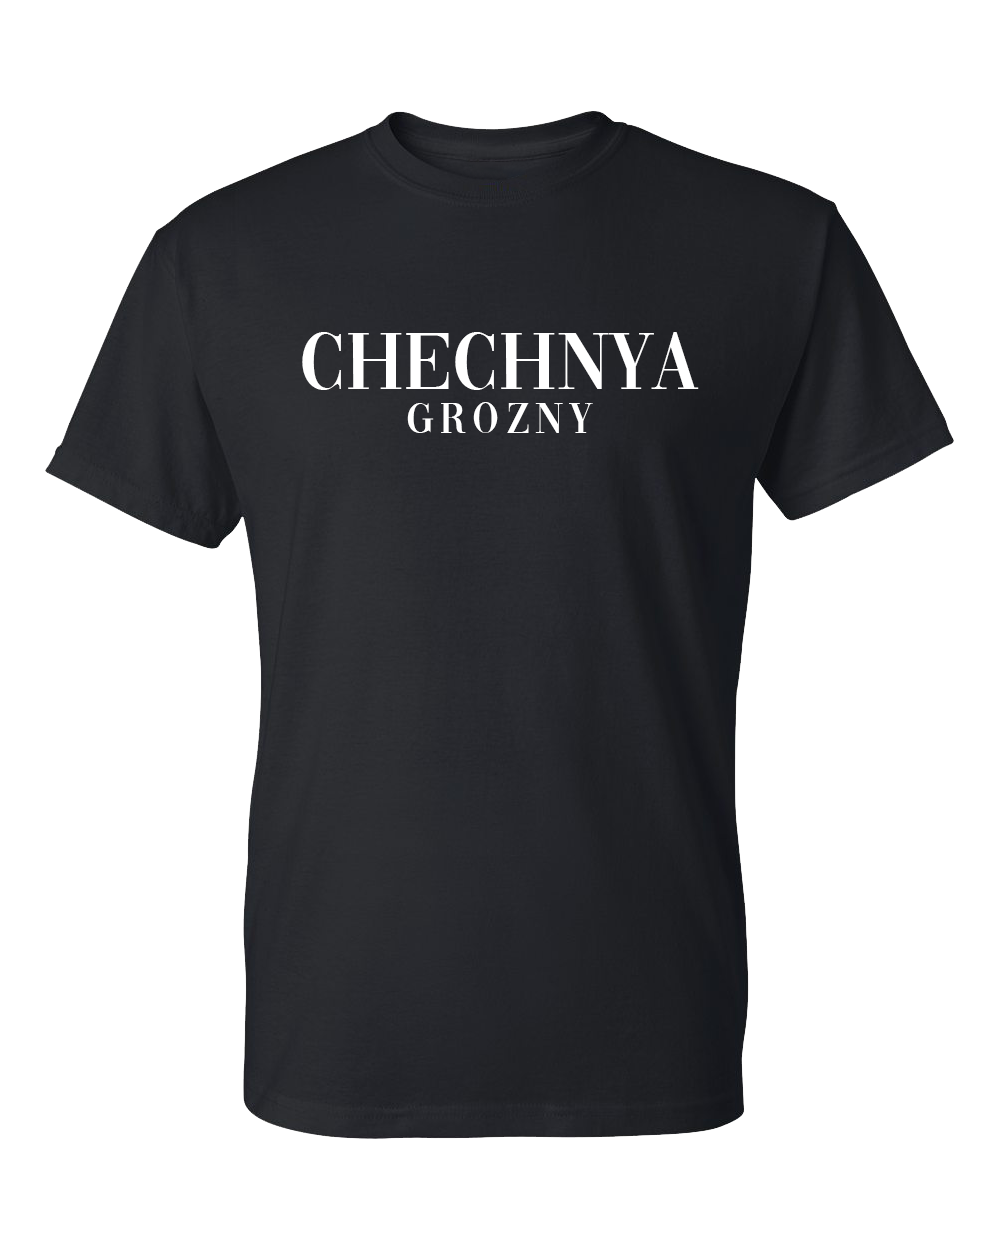 Chechnya Grozny